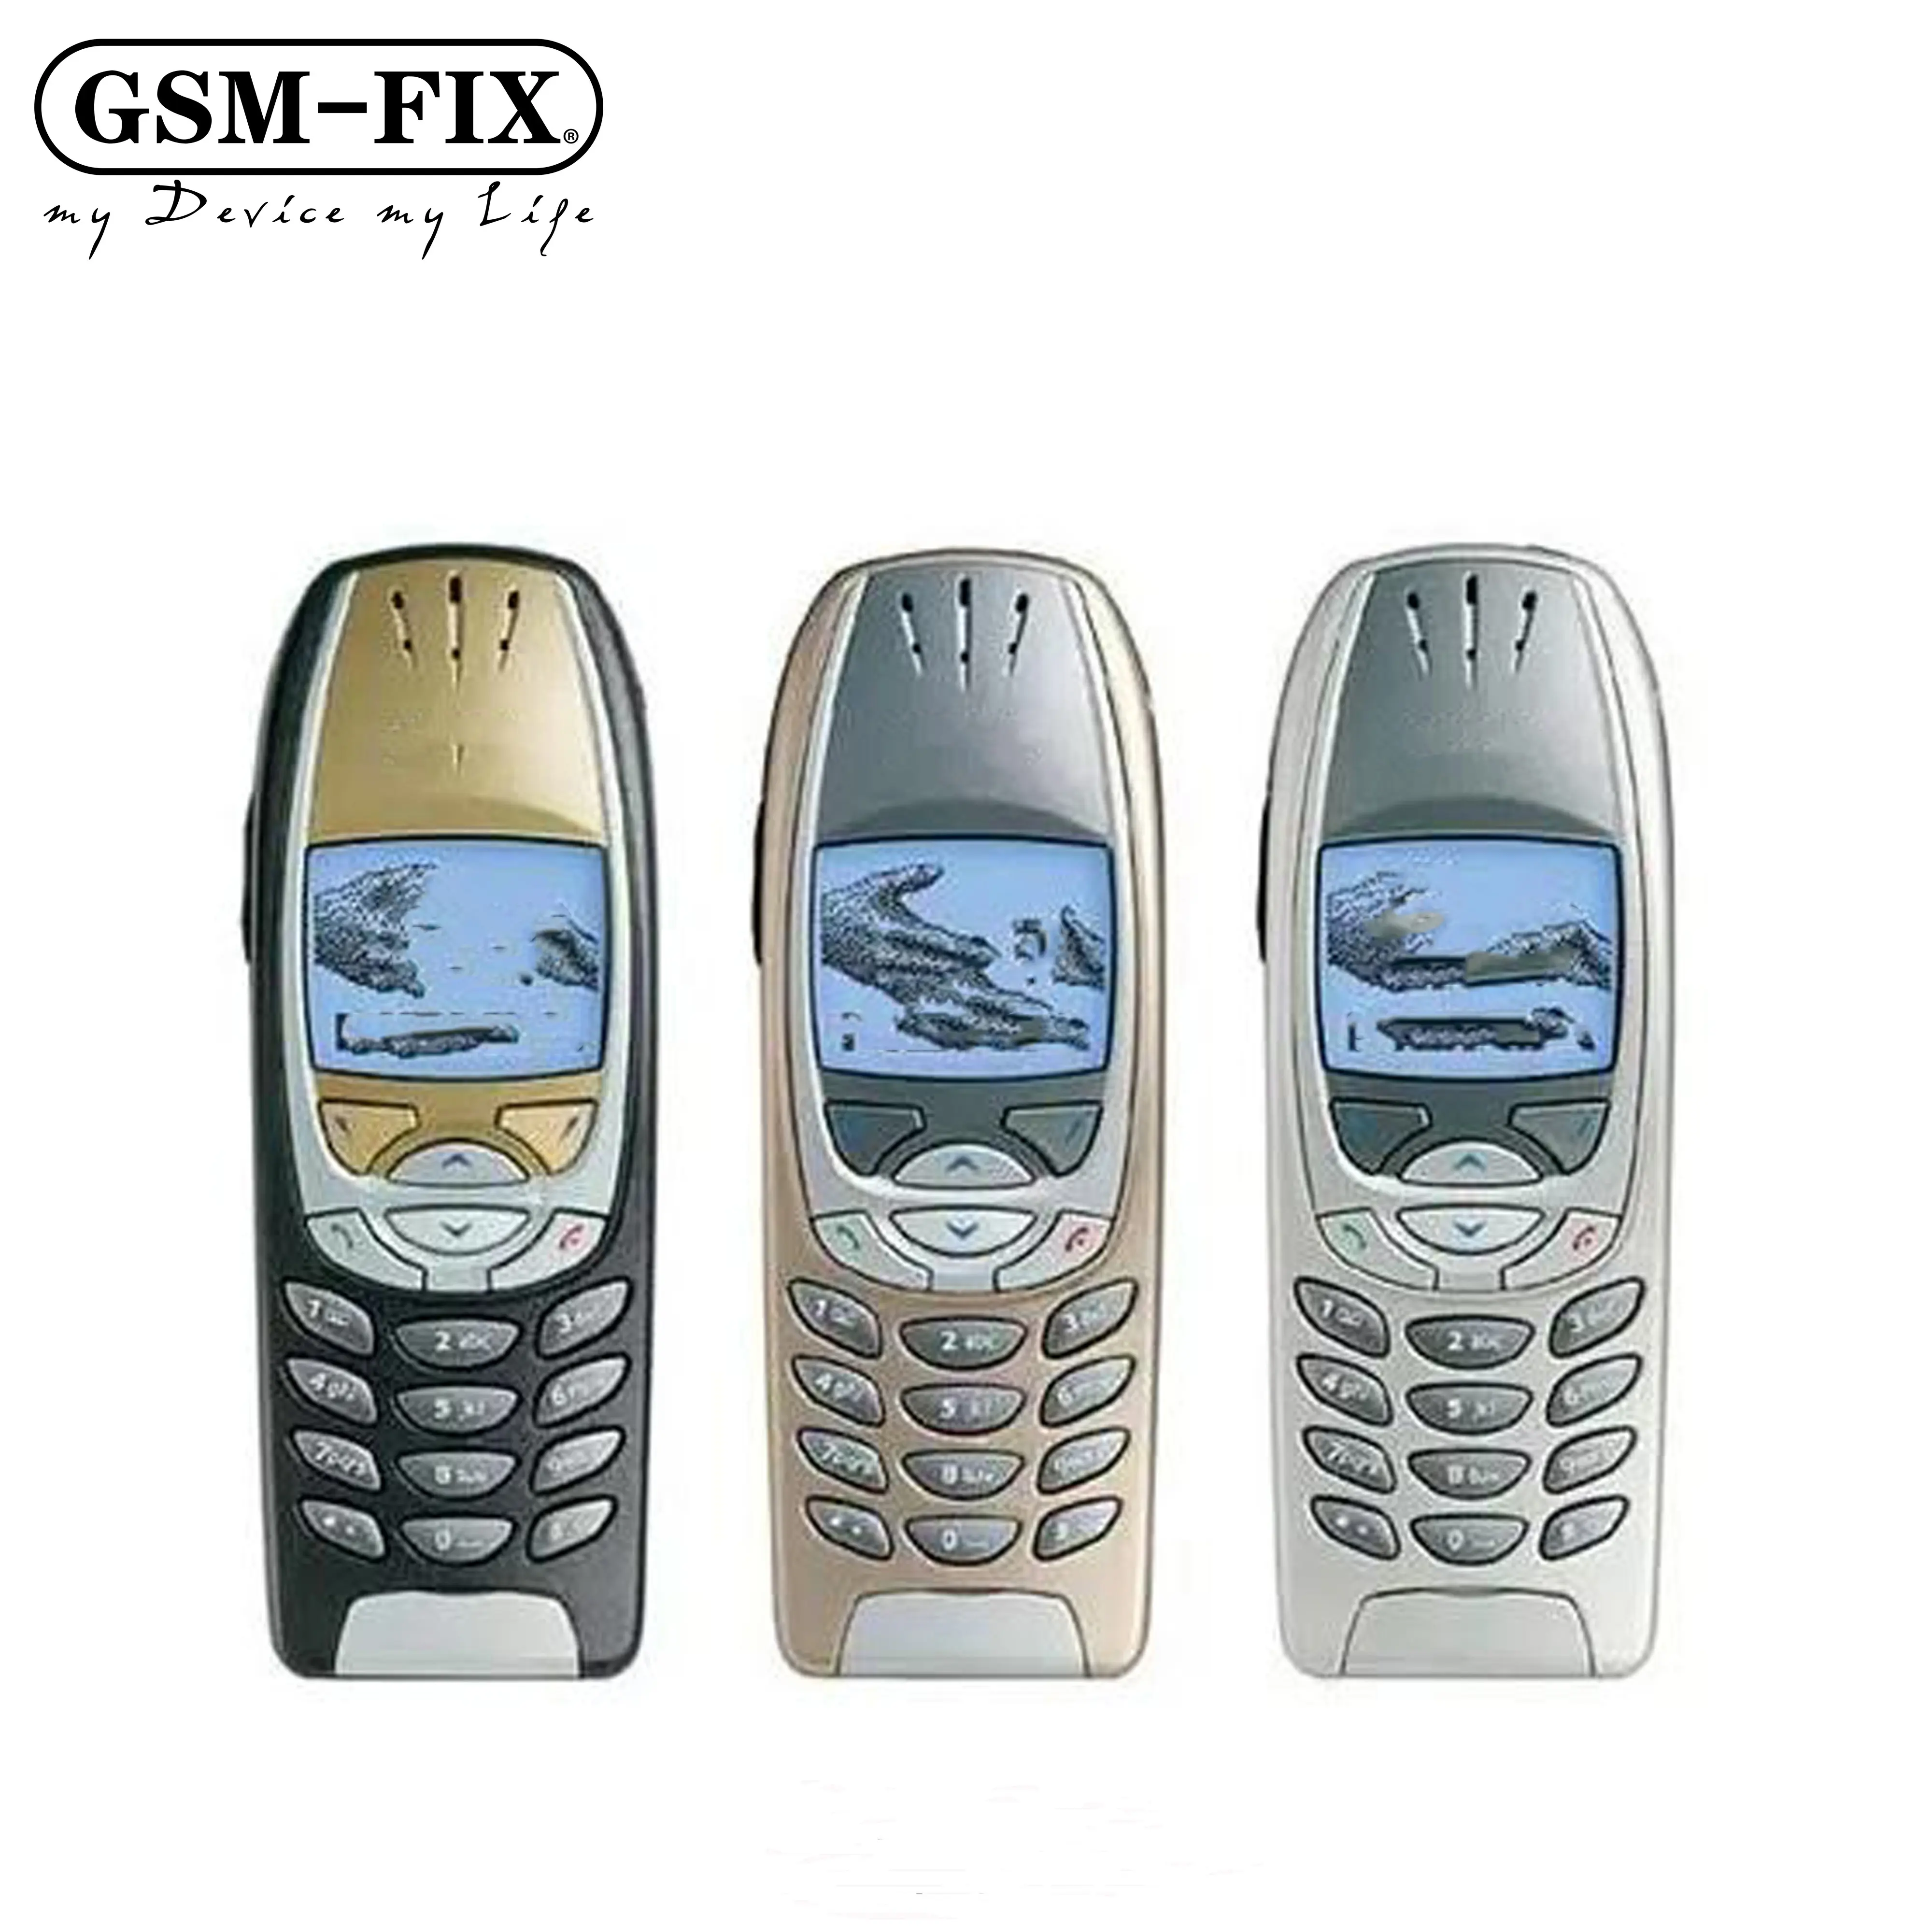 GSM-FIX pour Nokia 6310i débloqué Original Super pas cher GSM Bar déverrouillé GSM Bar téléphone portable Mobile